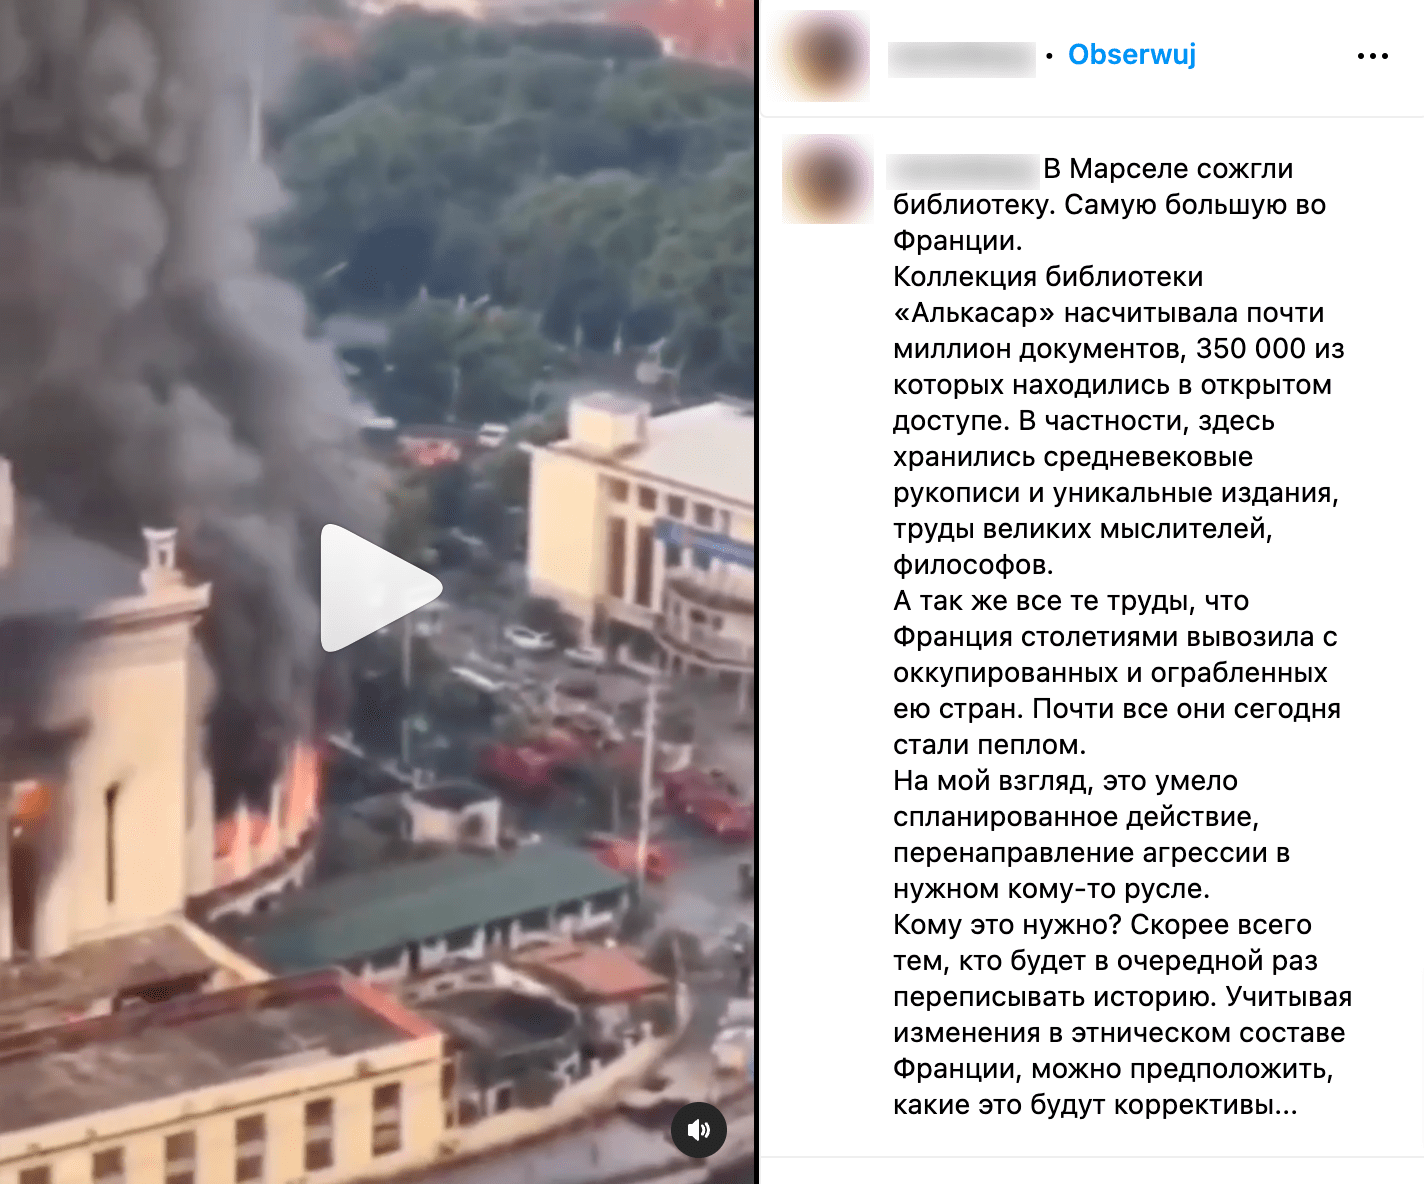 Скриншот поста в Инстаграме. В кадре видно горящее здание.